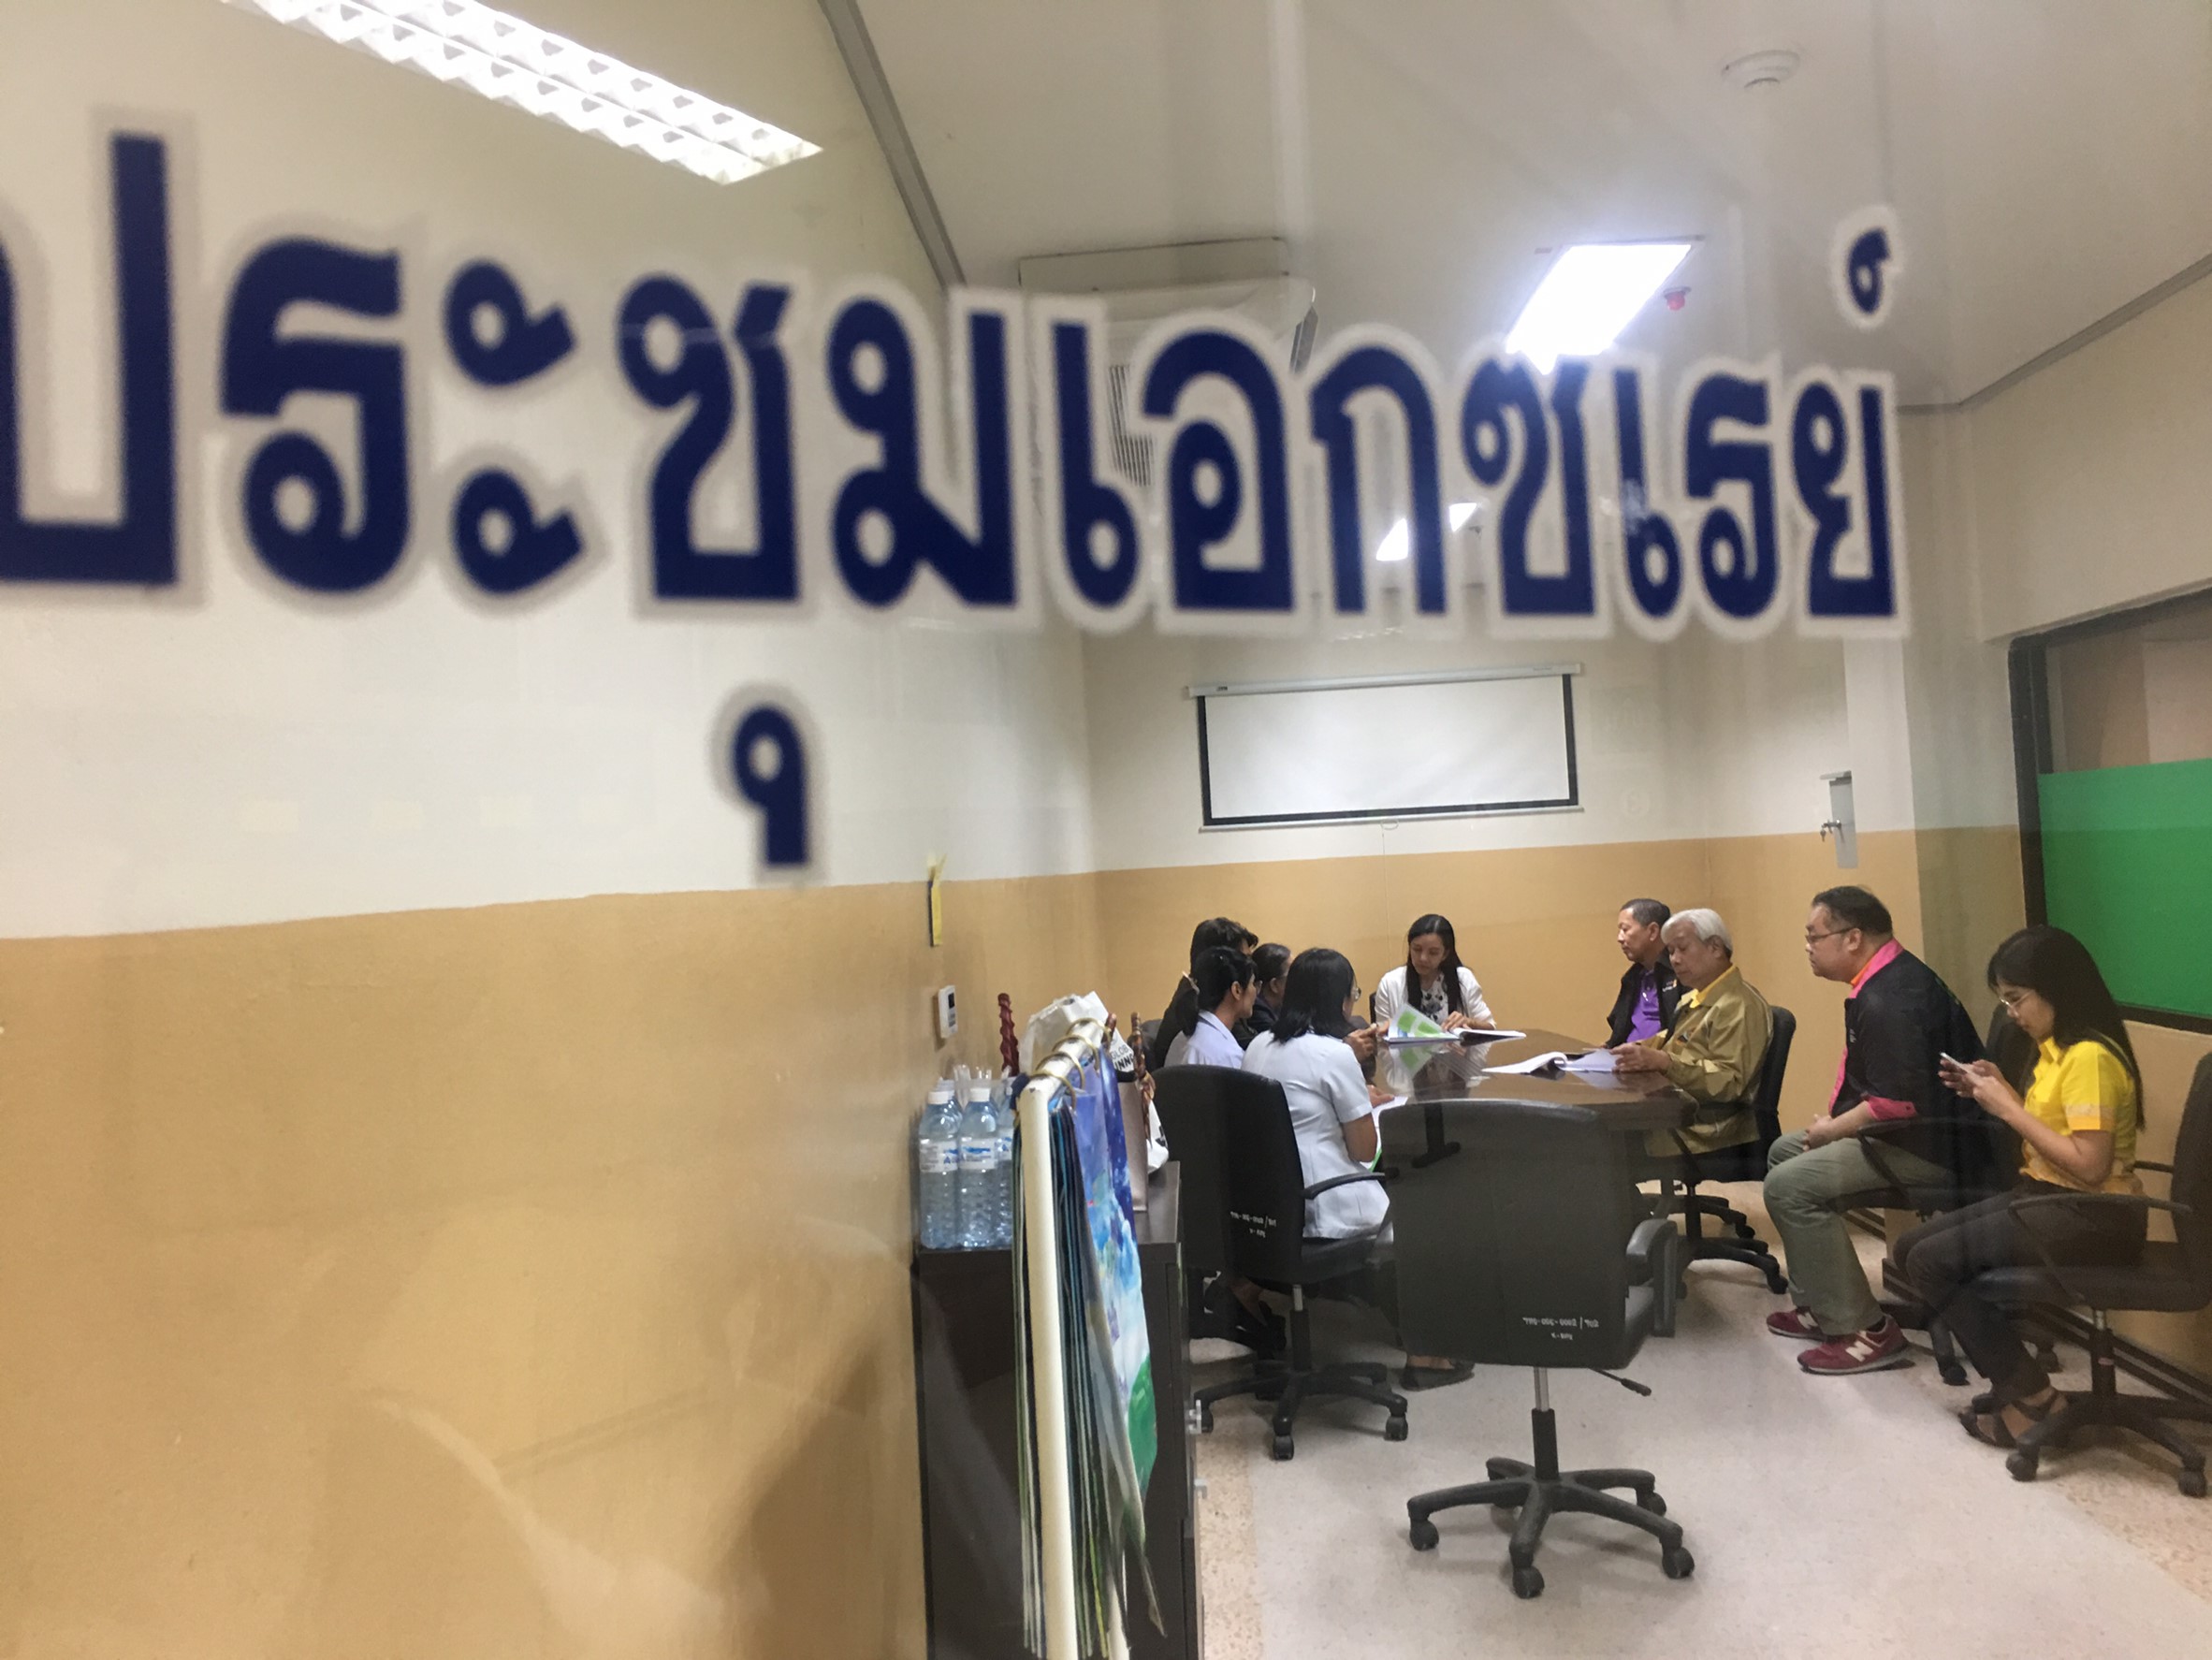 ประชุมวิชาการร่วมกับรังสีการแพทย์แห่งประเทศไทย ครั้งที่17 27-29 พ.ย. - พร้อมเข้าเยี่ยมและให้กำลังใจหน่วยงานรังสีวิทยาในพื้นที่จังหวัดอุบลราชธานีระหว่างวันที่ 25-26 พฤศจิกายน 2562 61